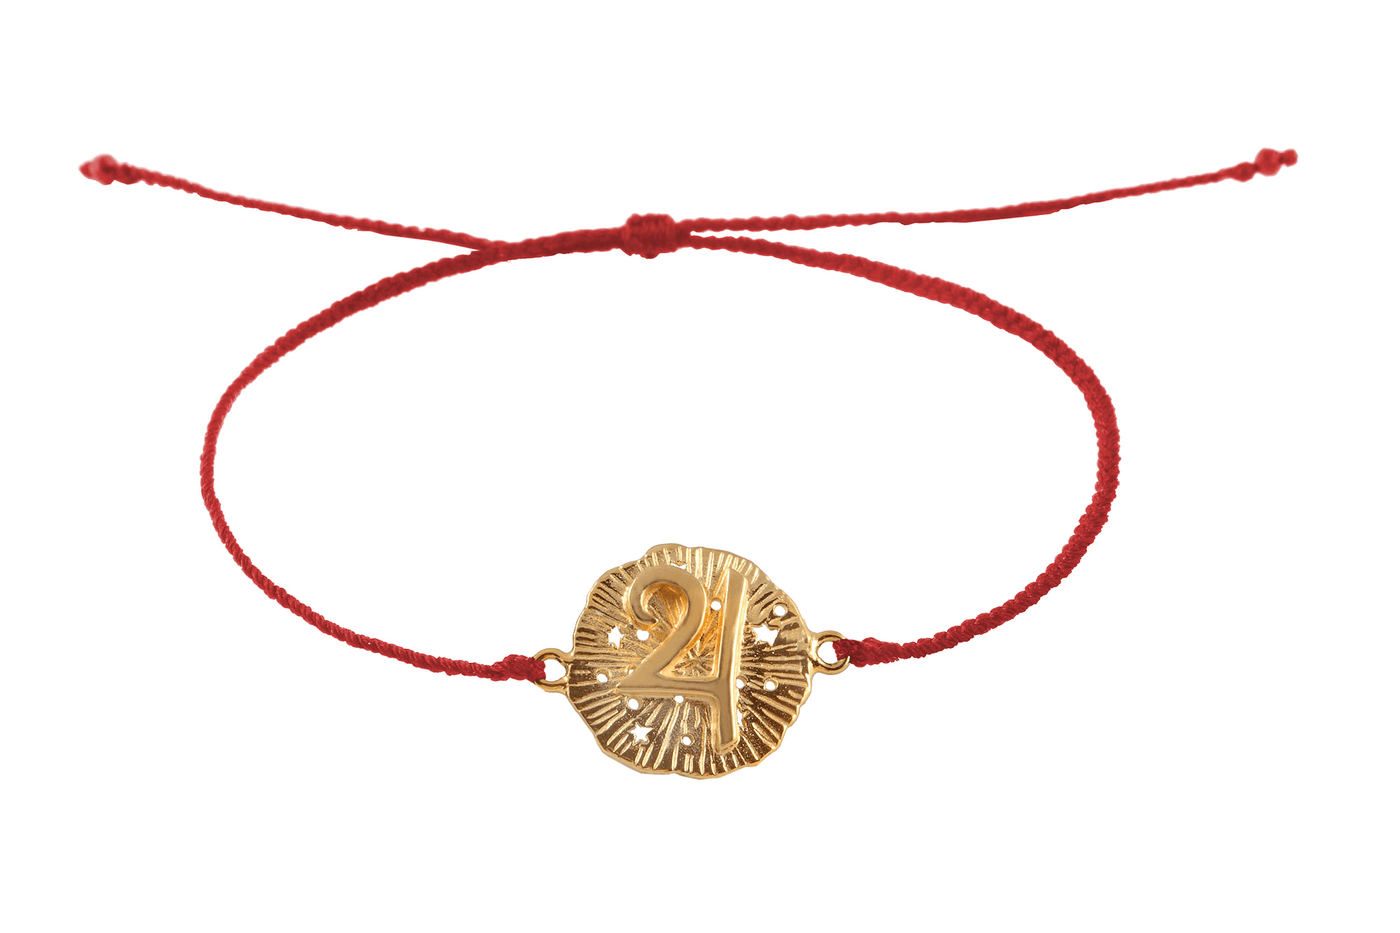 String bracelet with Jupiter medallion amulet. Gold plated